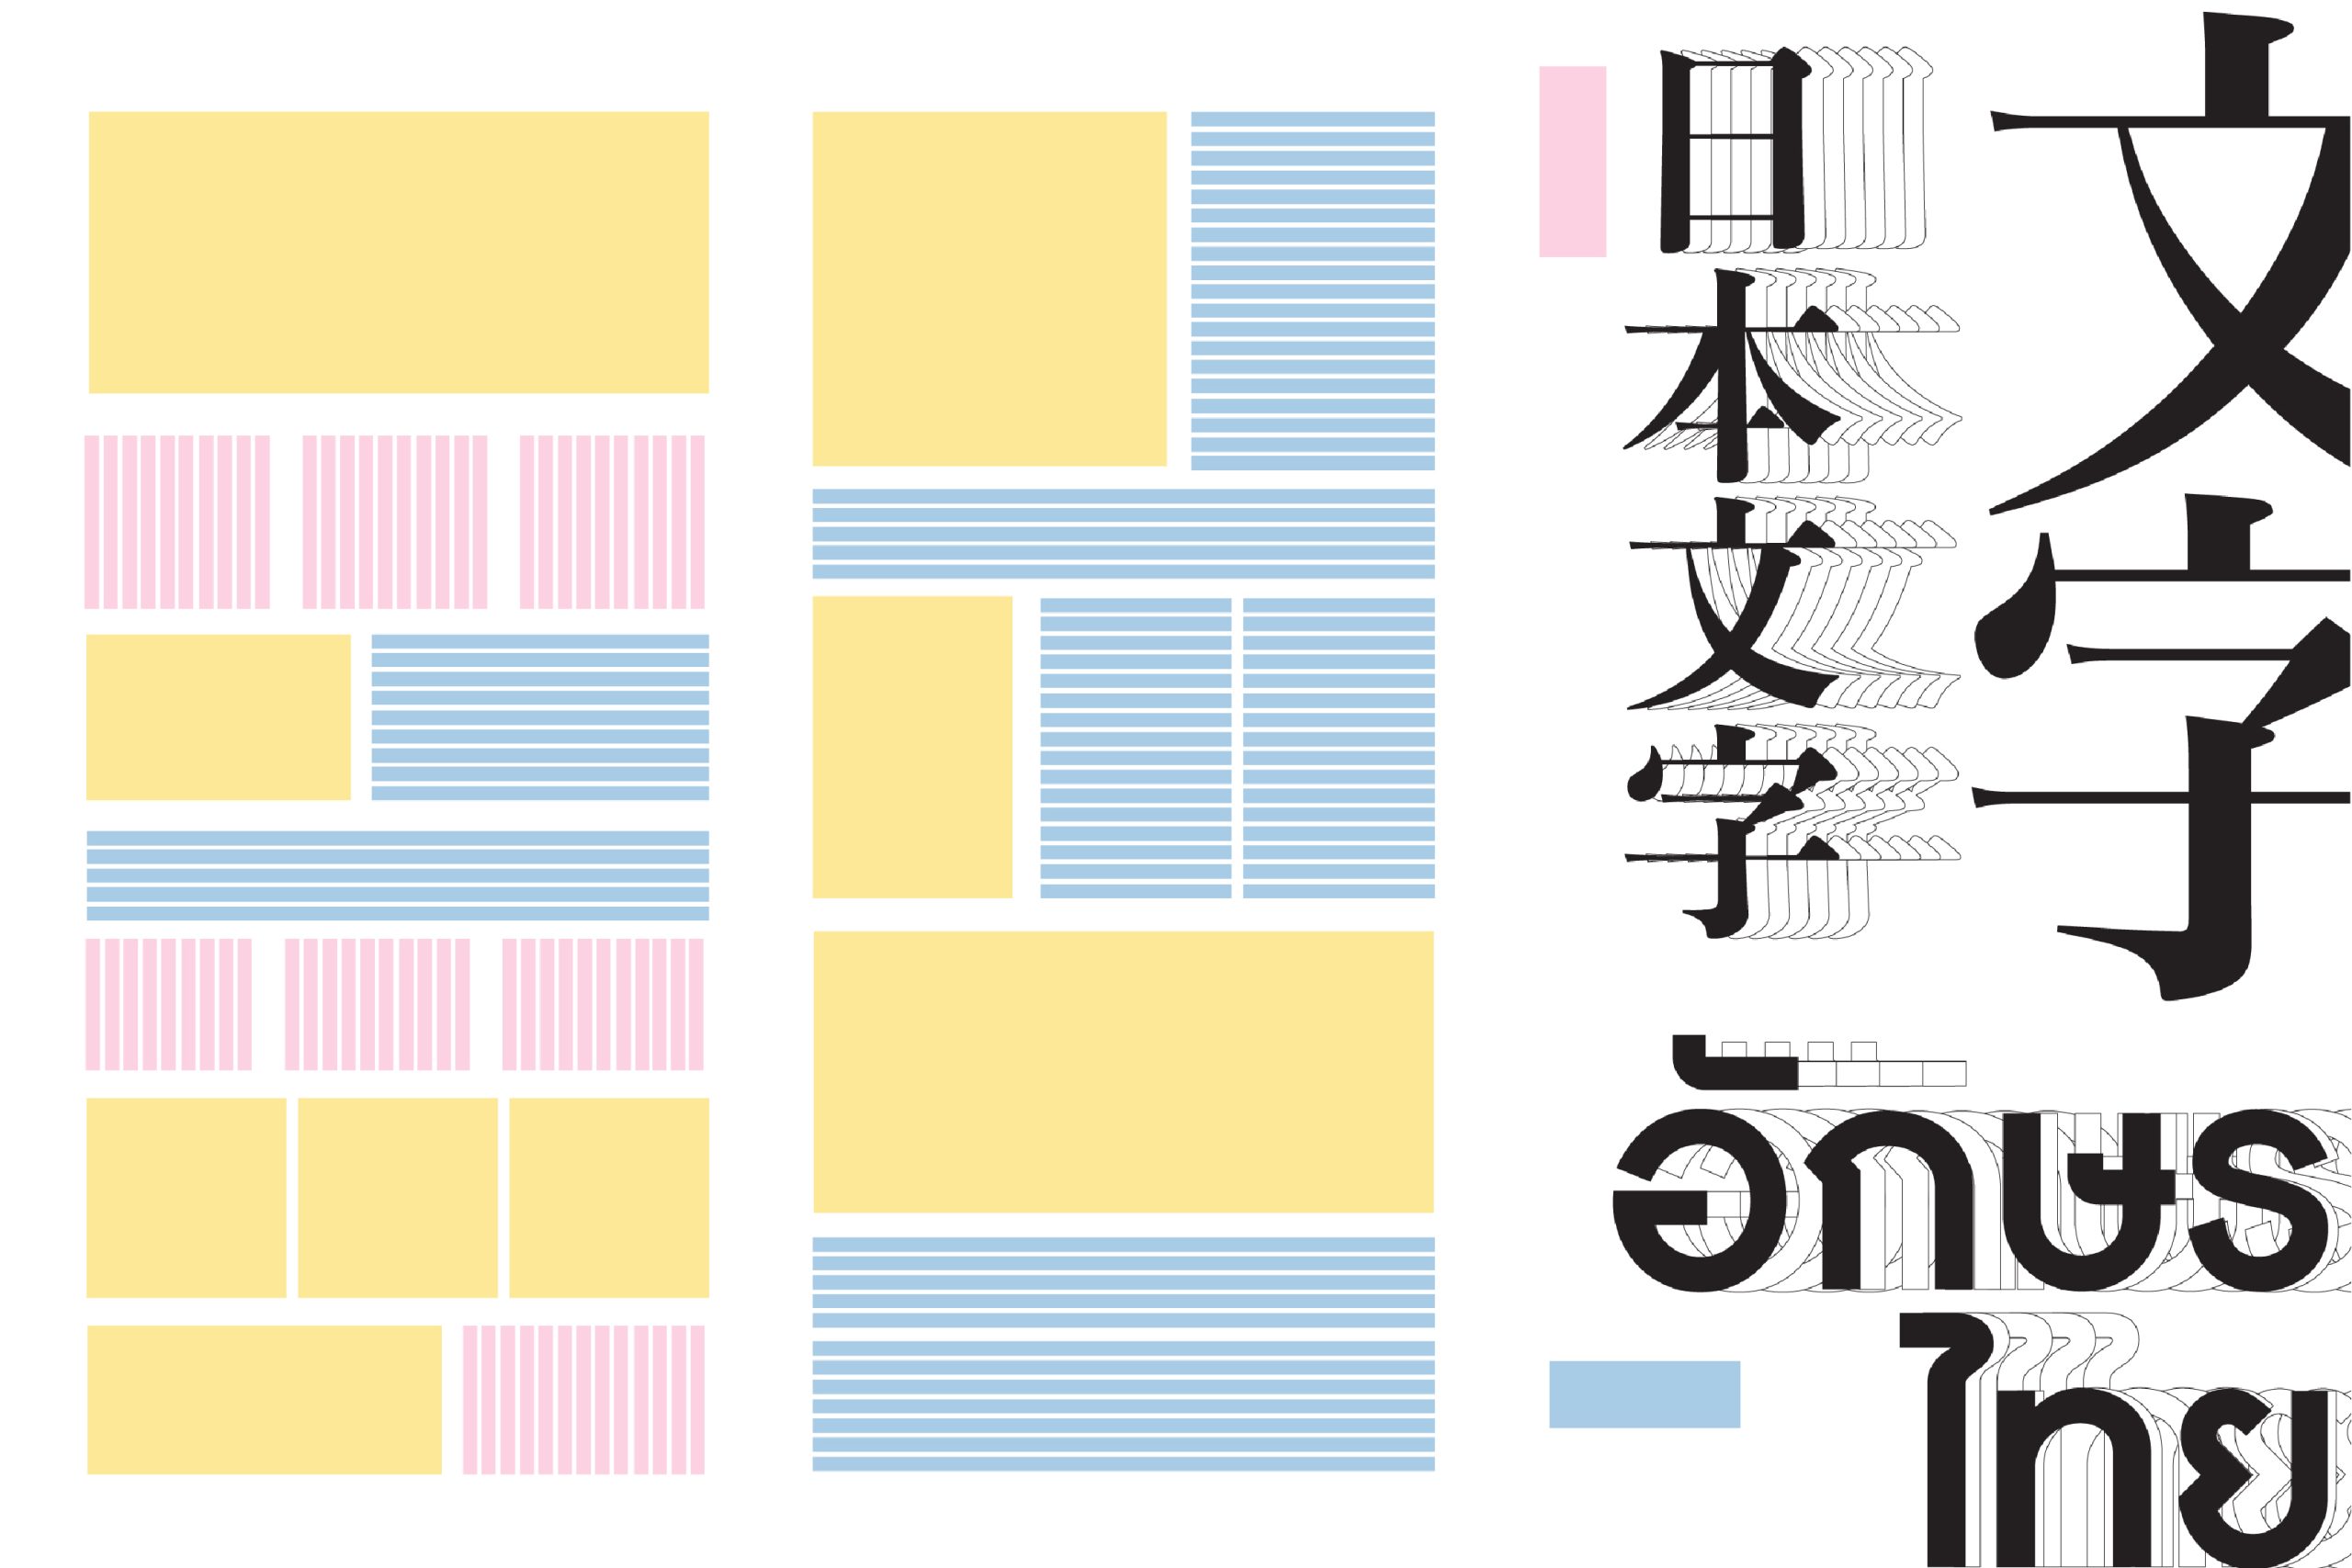 縦のレイアウトデザイン、日本とタイ文字の比較 -01-01